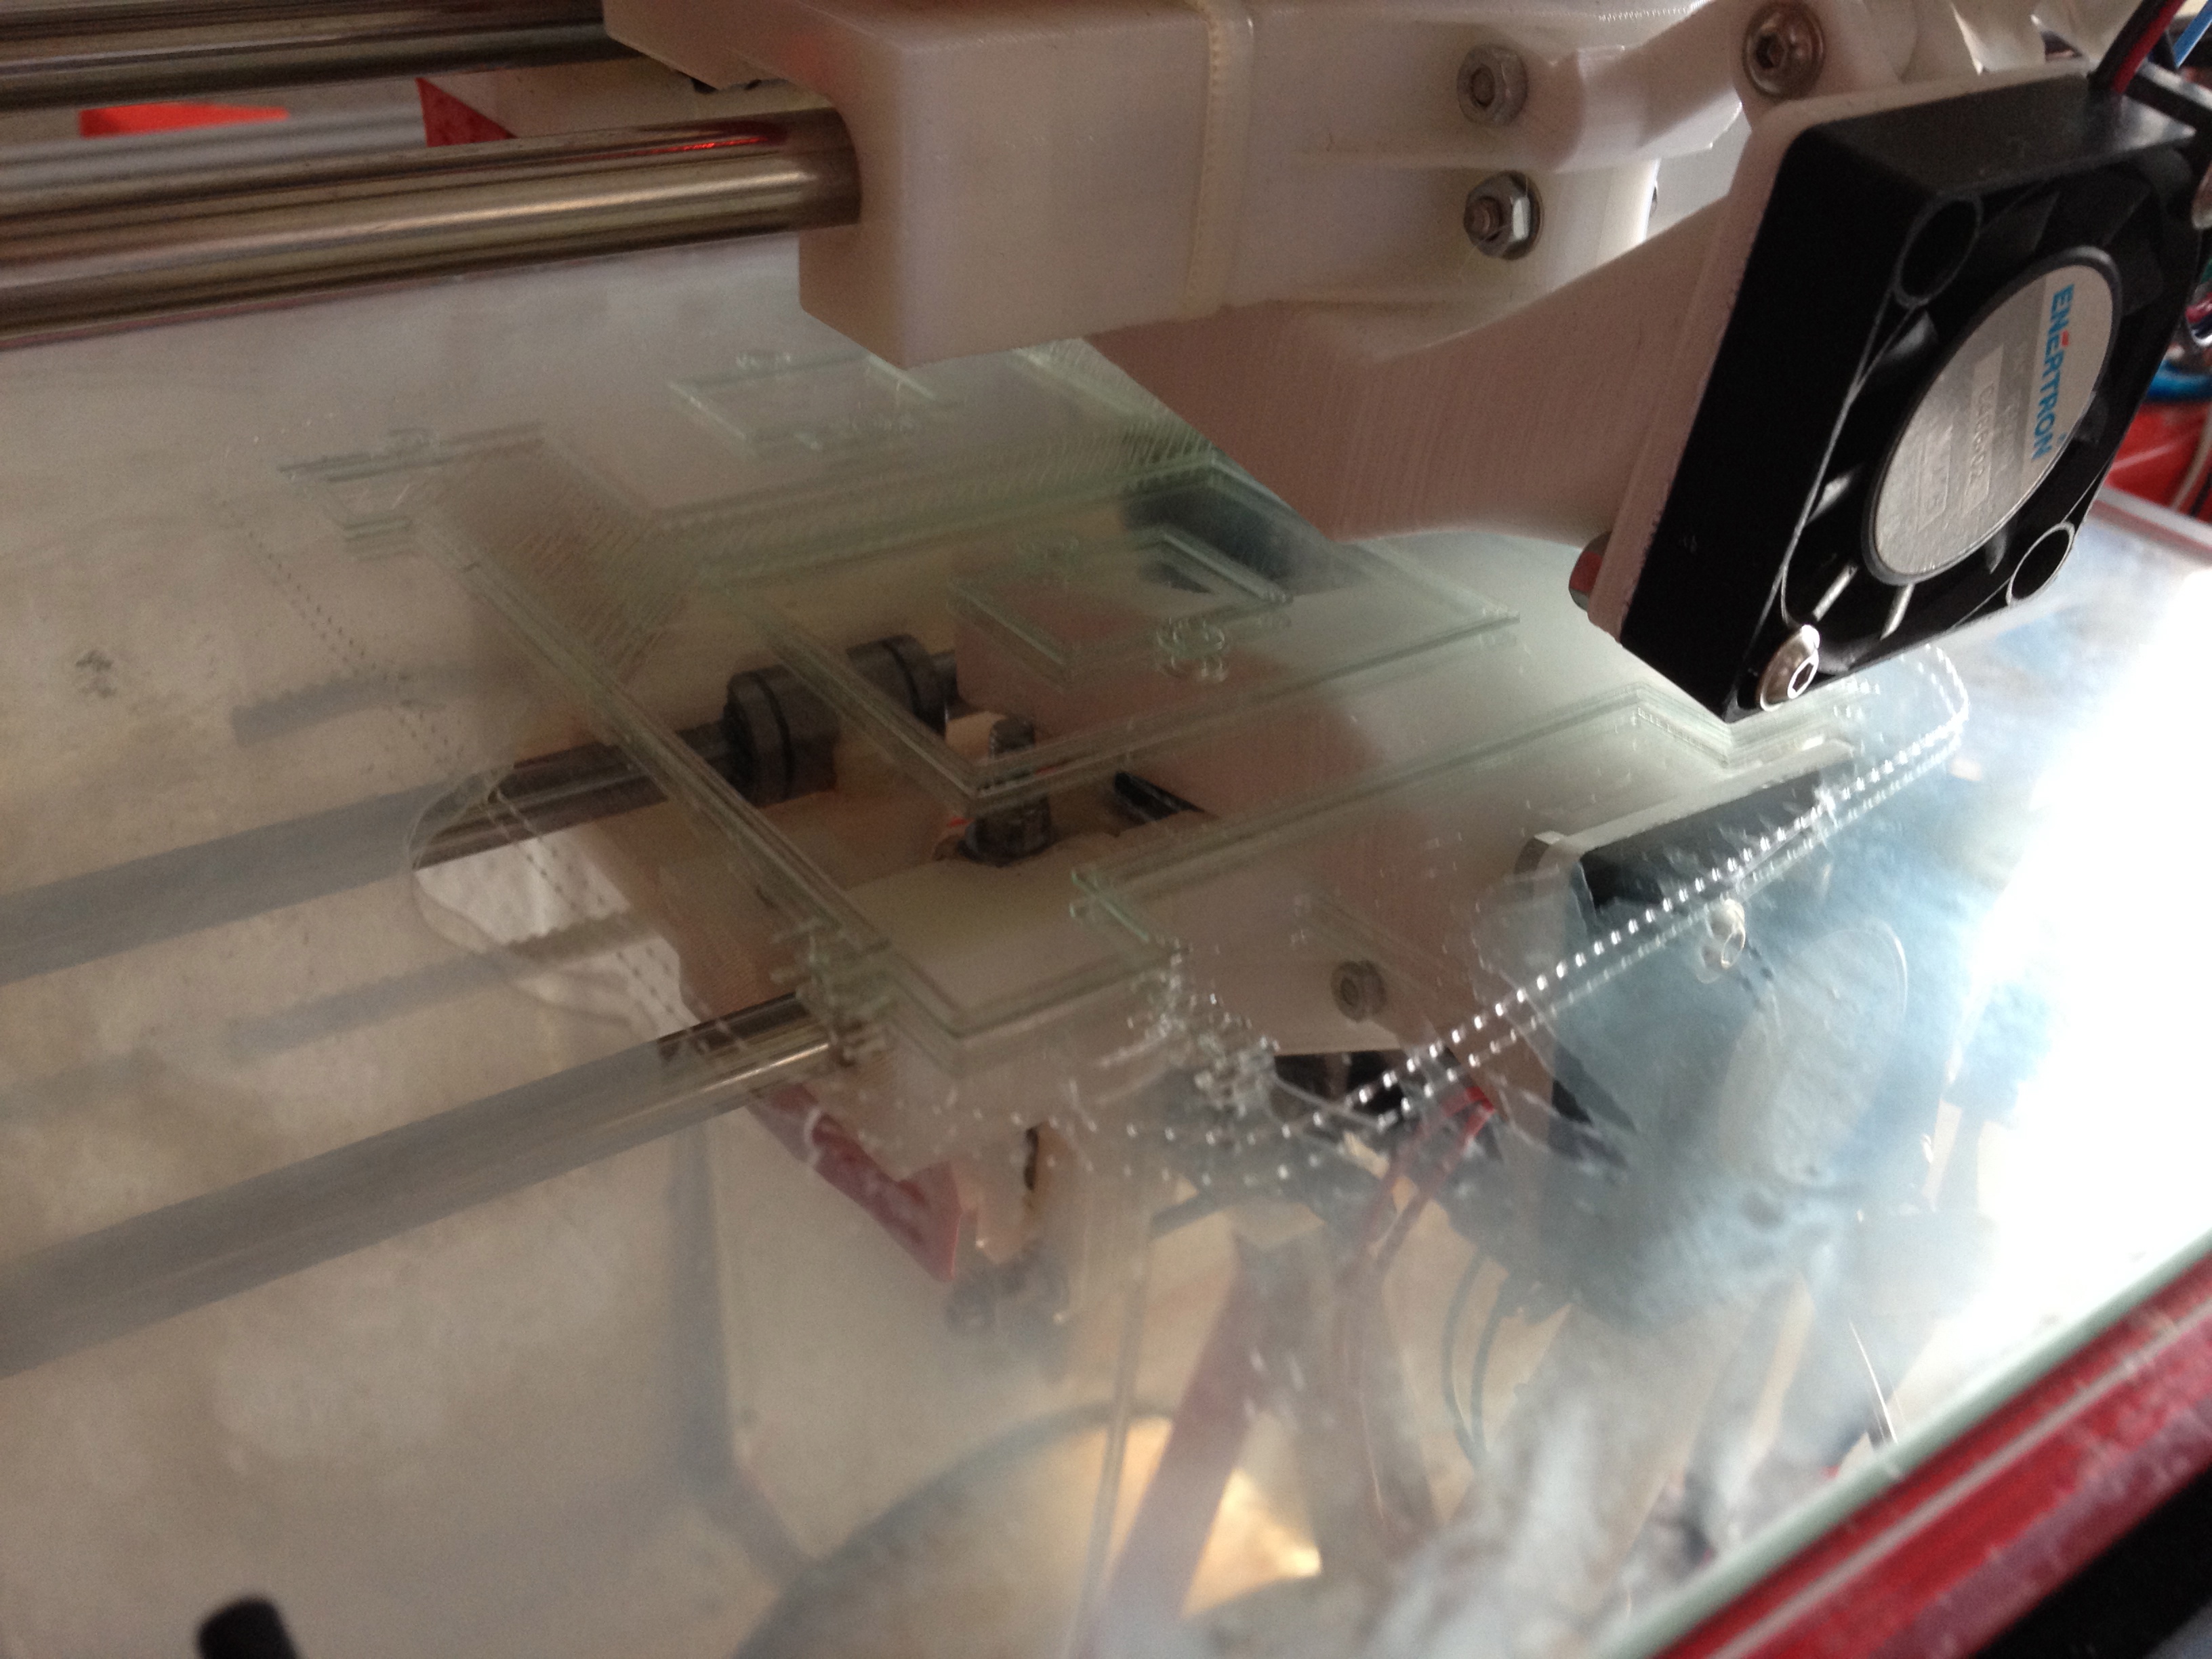 A 3d printer printing on a glass sheet